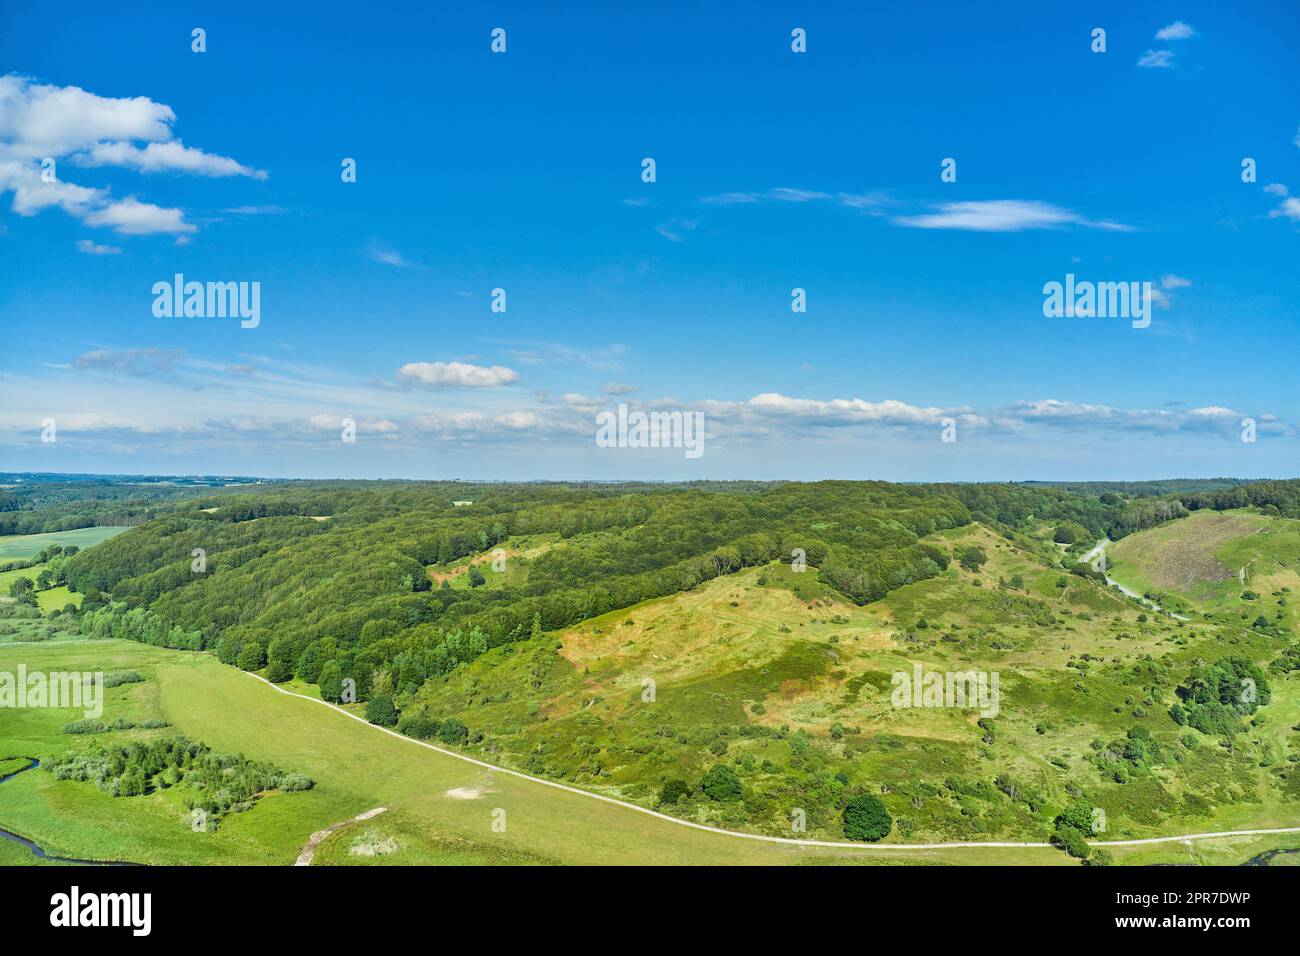 Eine landwirtschaftliche Landschaft mit grünen Weiden und Hügeln im Sommer. Luftaufnahme auf eine Farm mit üppigem Gras vor einem wolkigen blauen Himmel mit viel Platz. Friedliches Ackerland mit beruhigender, beruhigender malerischer Aussicht Stockfoto